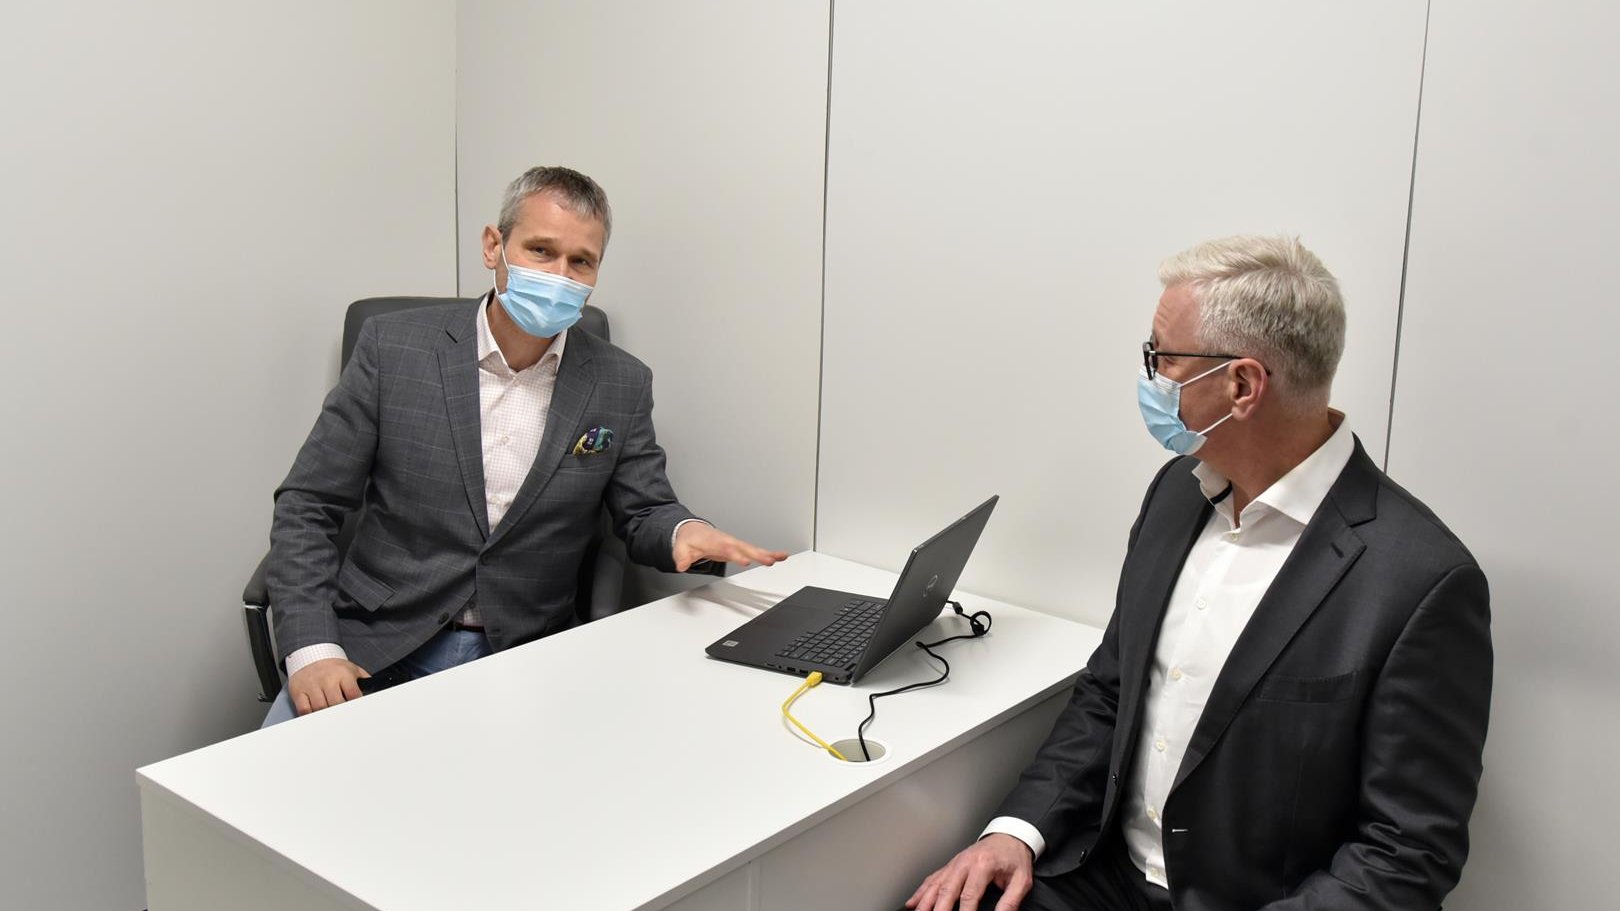 Wnętrze punktu, Jacek Jaśkowiak i Jędrzej Solarski w gabinecie medycznym, siedzą po dwóch stronach biurka, na którym stoi laptop